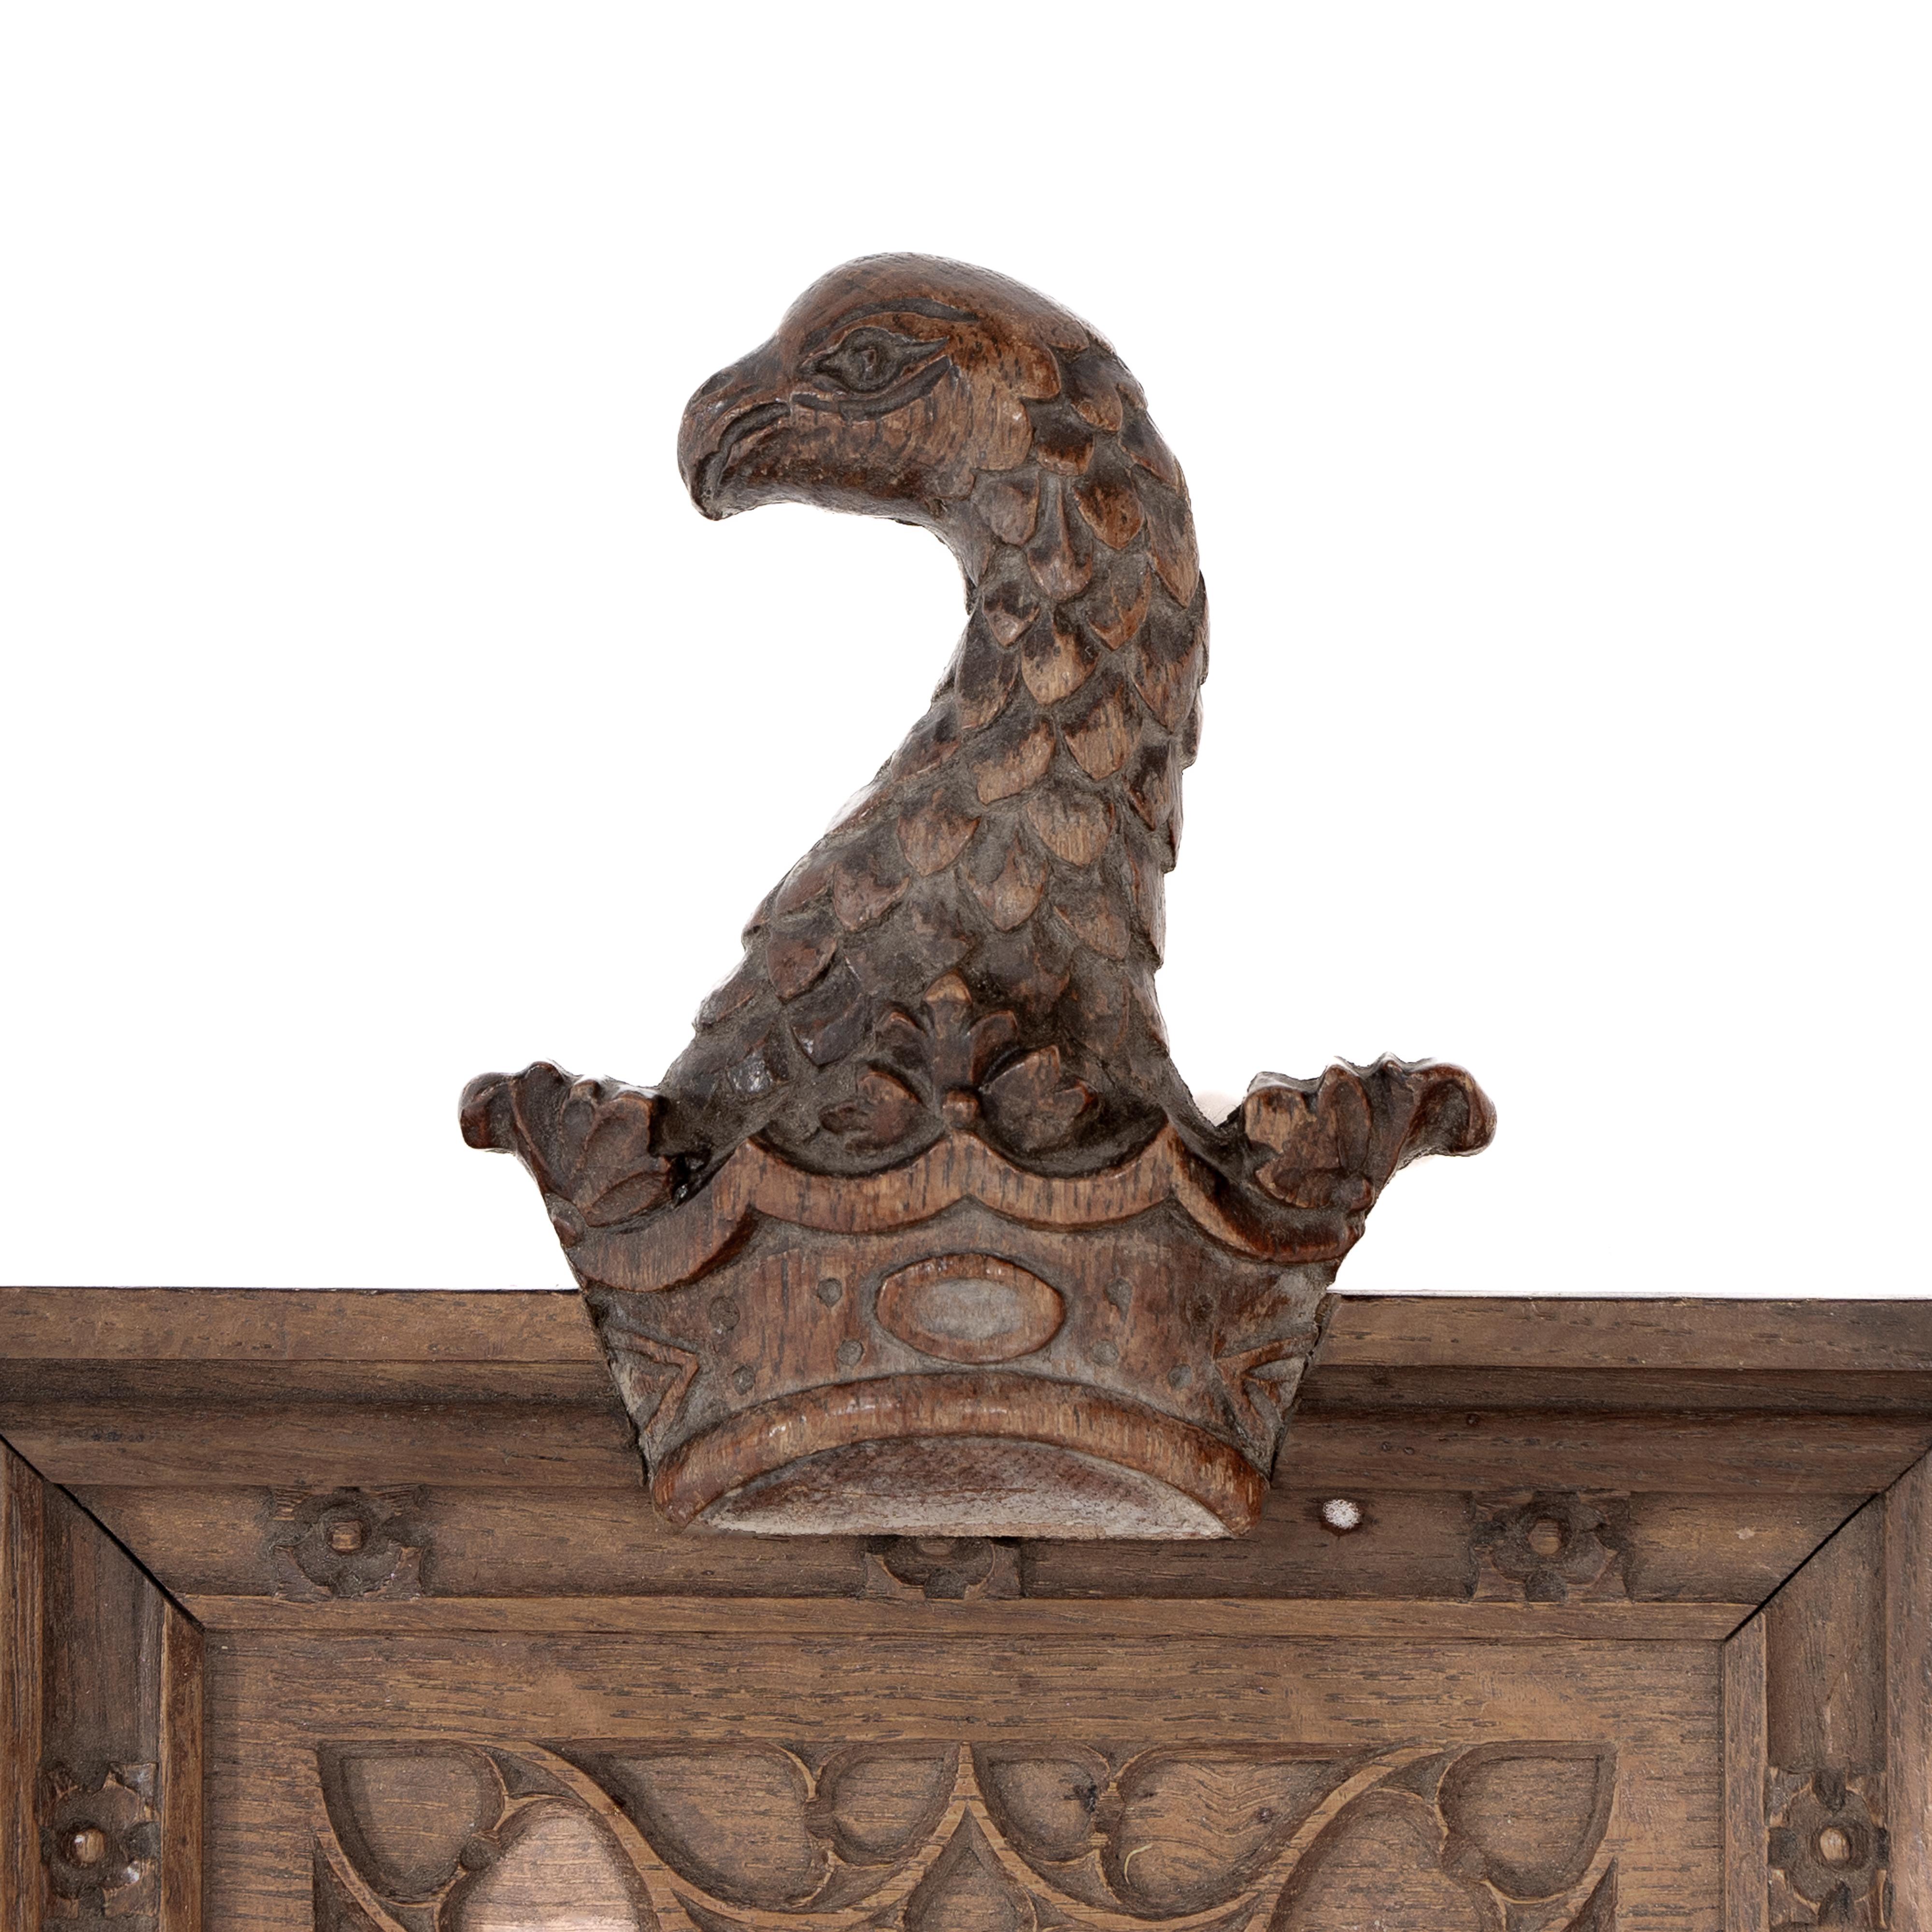 Ein neugotischer Eichenspiegel mit einem geschnitzten Adler auf der Oberseite und einem blinden gotischen Maßwerk darunter, das einen oberen Bogen bildet, die Seiten sind mit kleinen geschnitzten Röschen verziert. Der ursprüngliche Spiegel bleibt